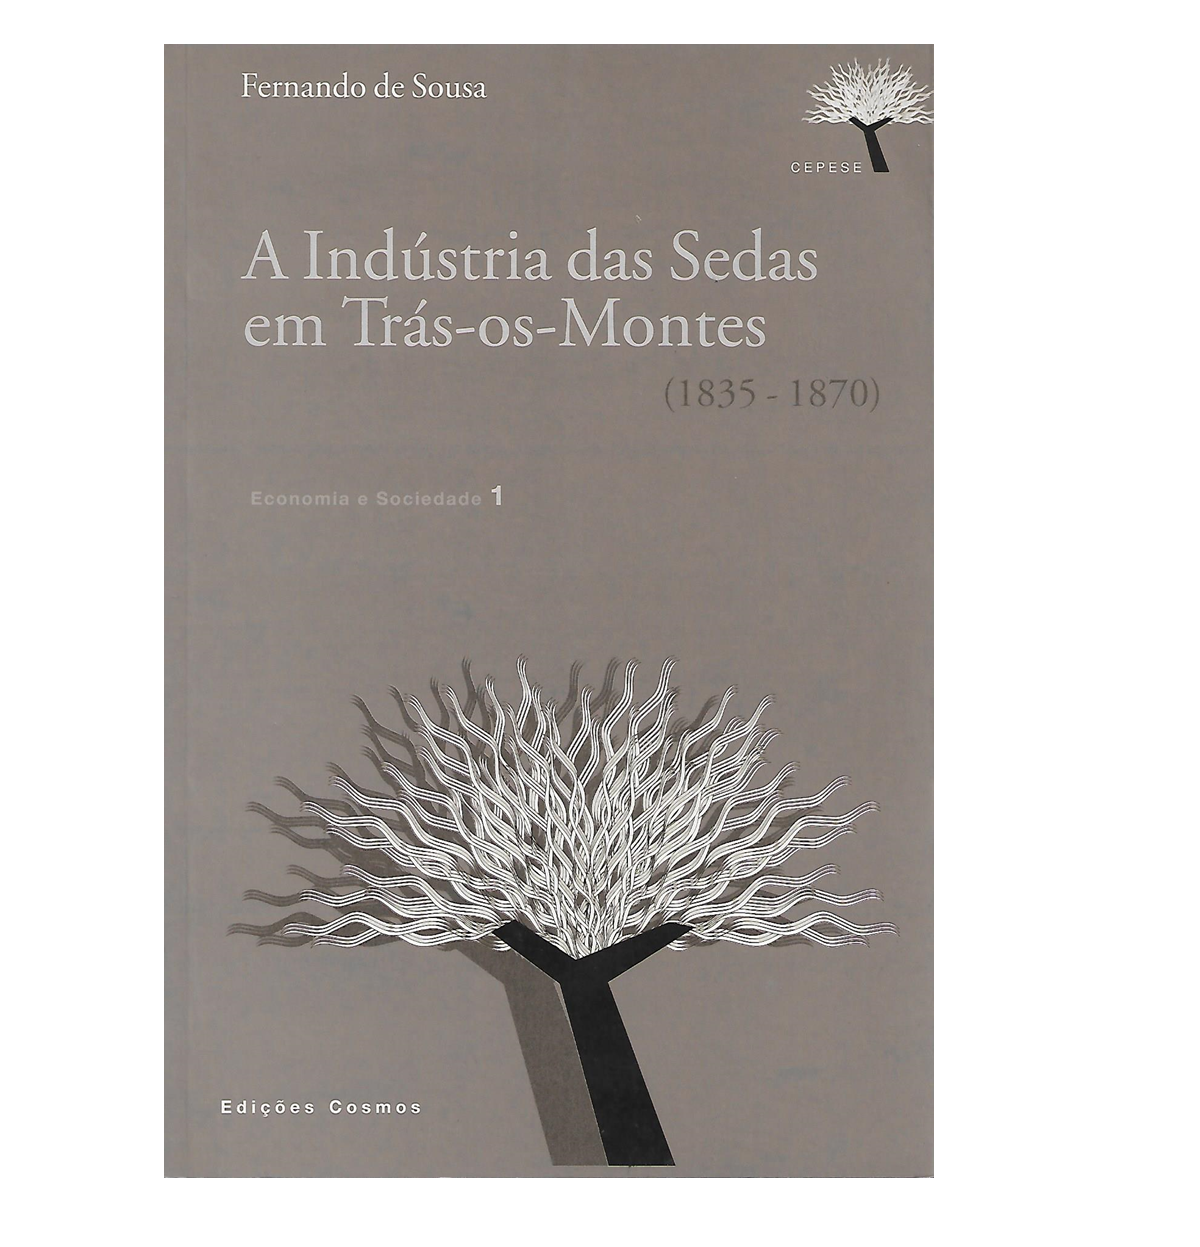 A Indústria das Sedas em Trás-os-Montes (1835-1870)